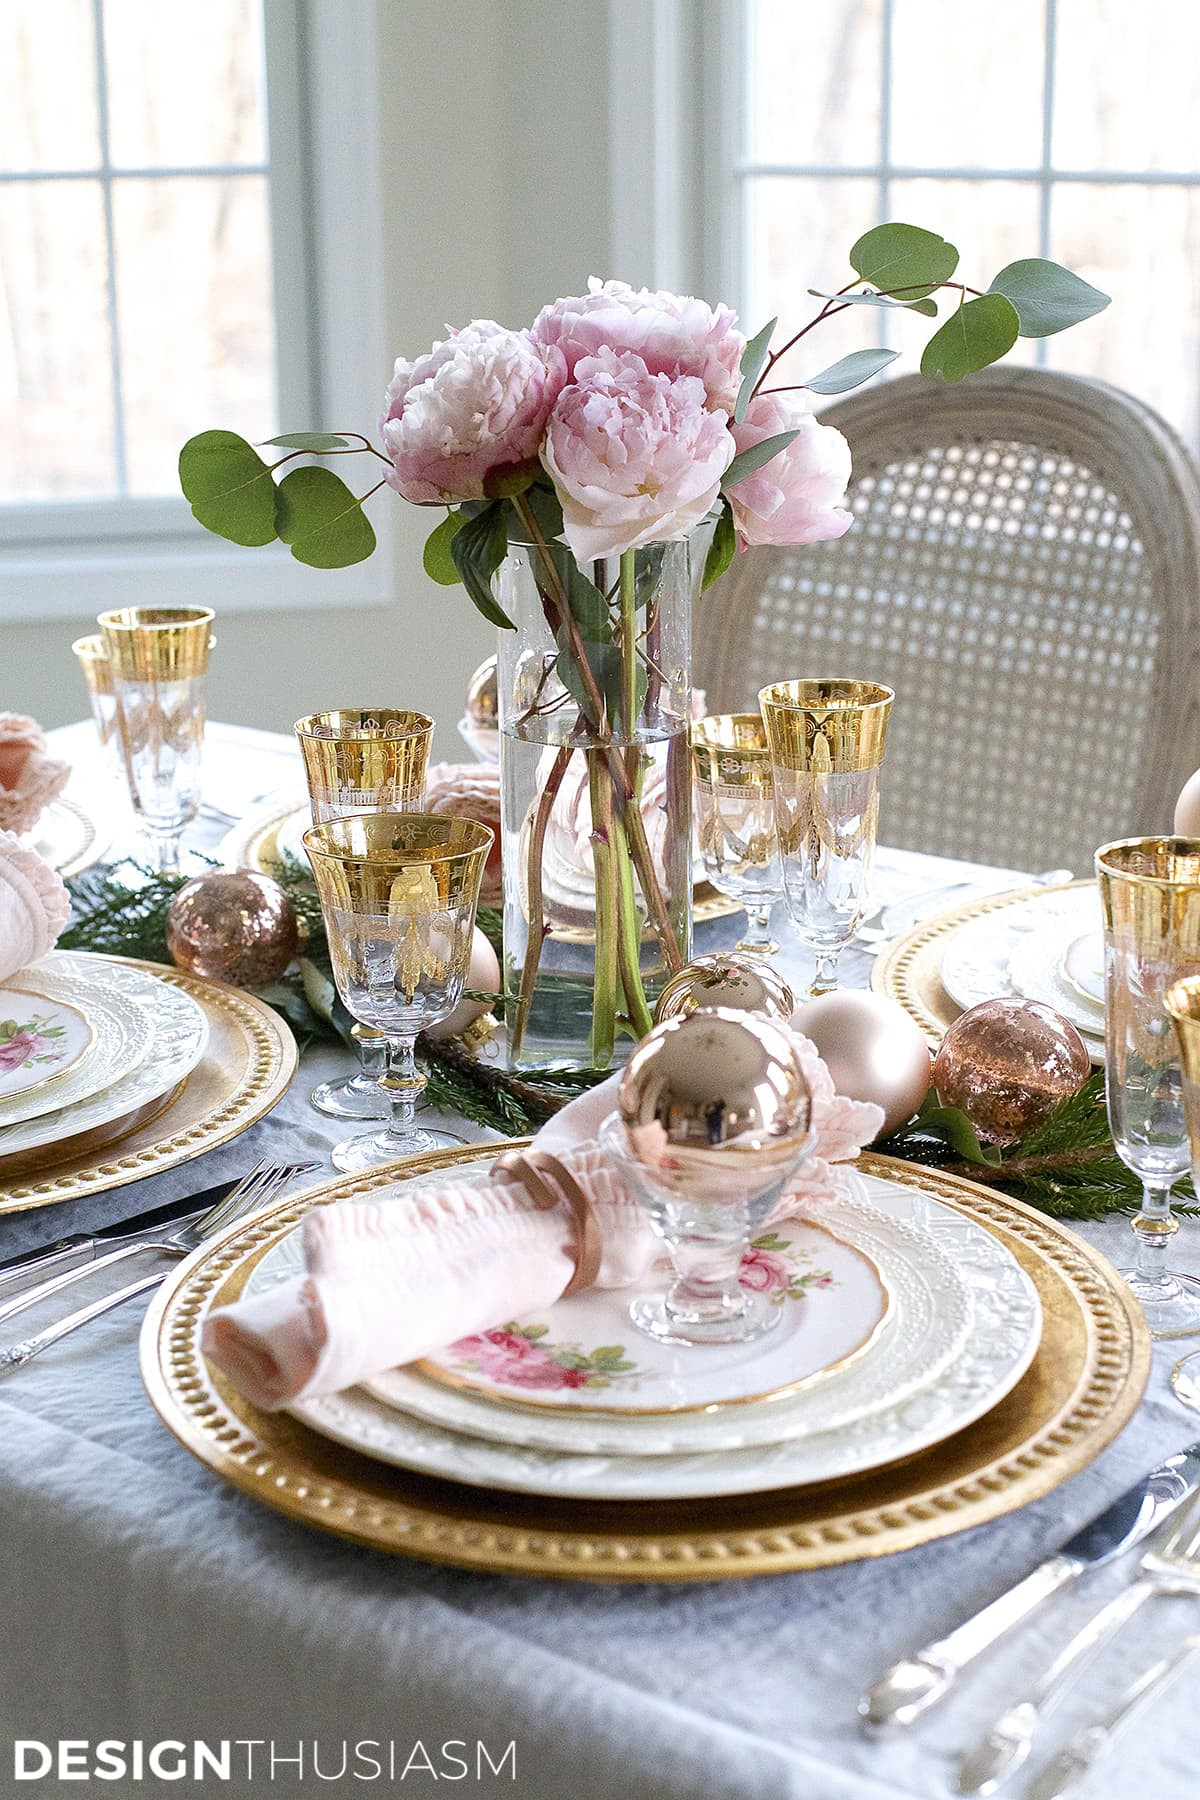 Elegant Christmas Table Settings Ideas
 Elegant Christmas Table Setting with Pink and Gold